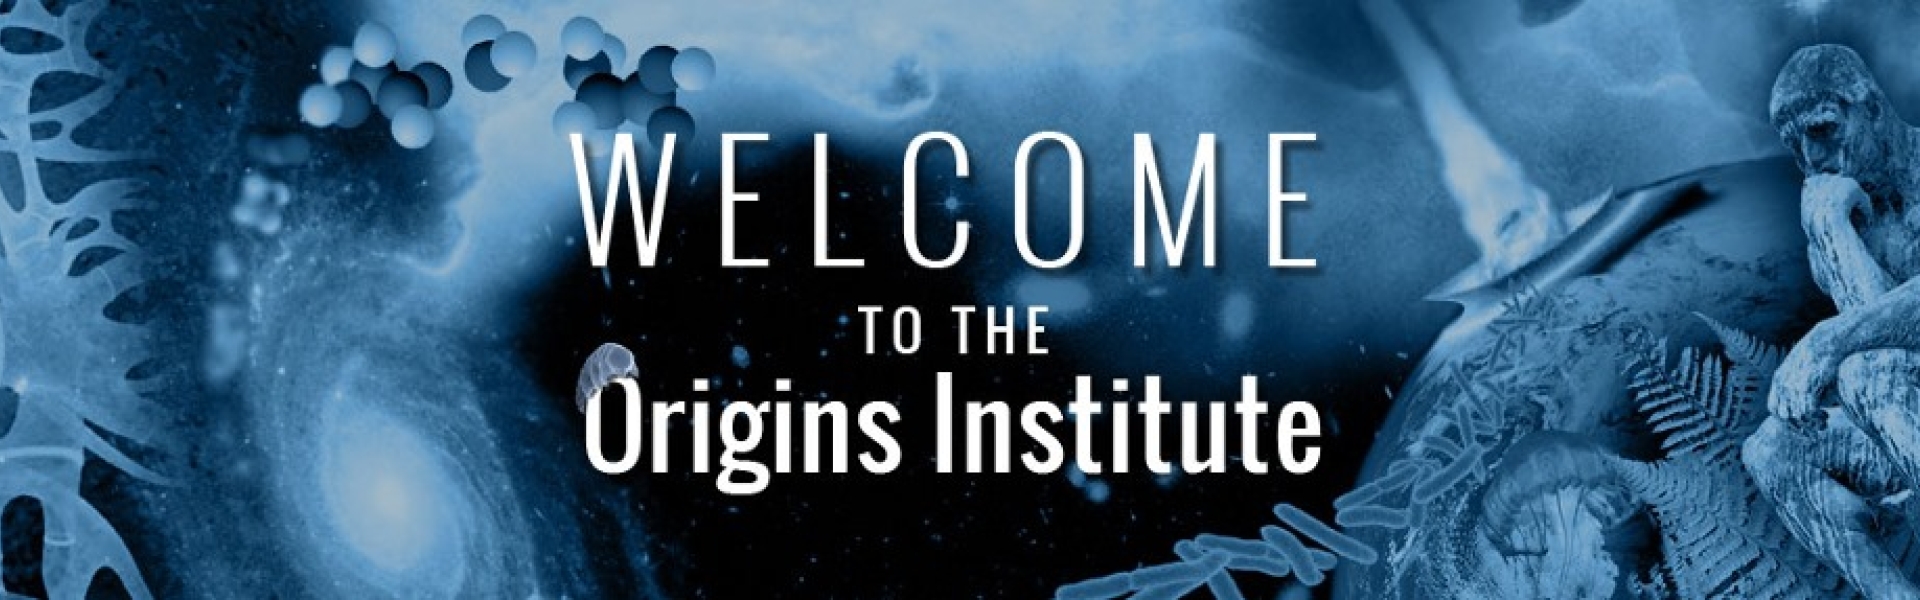 Origins Institute